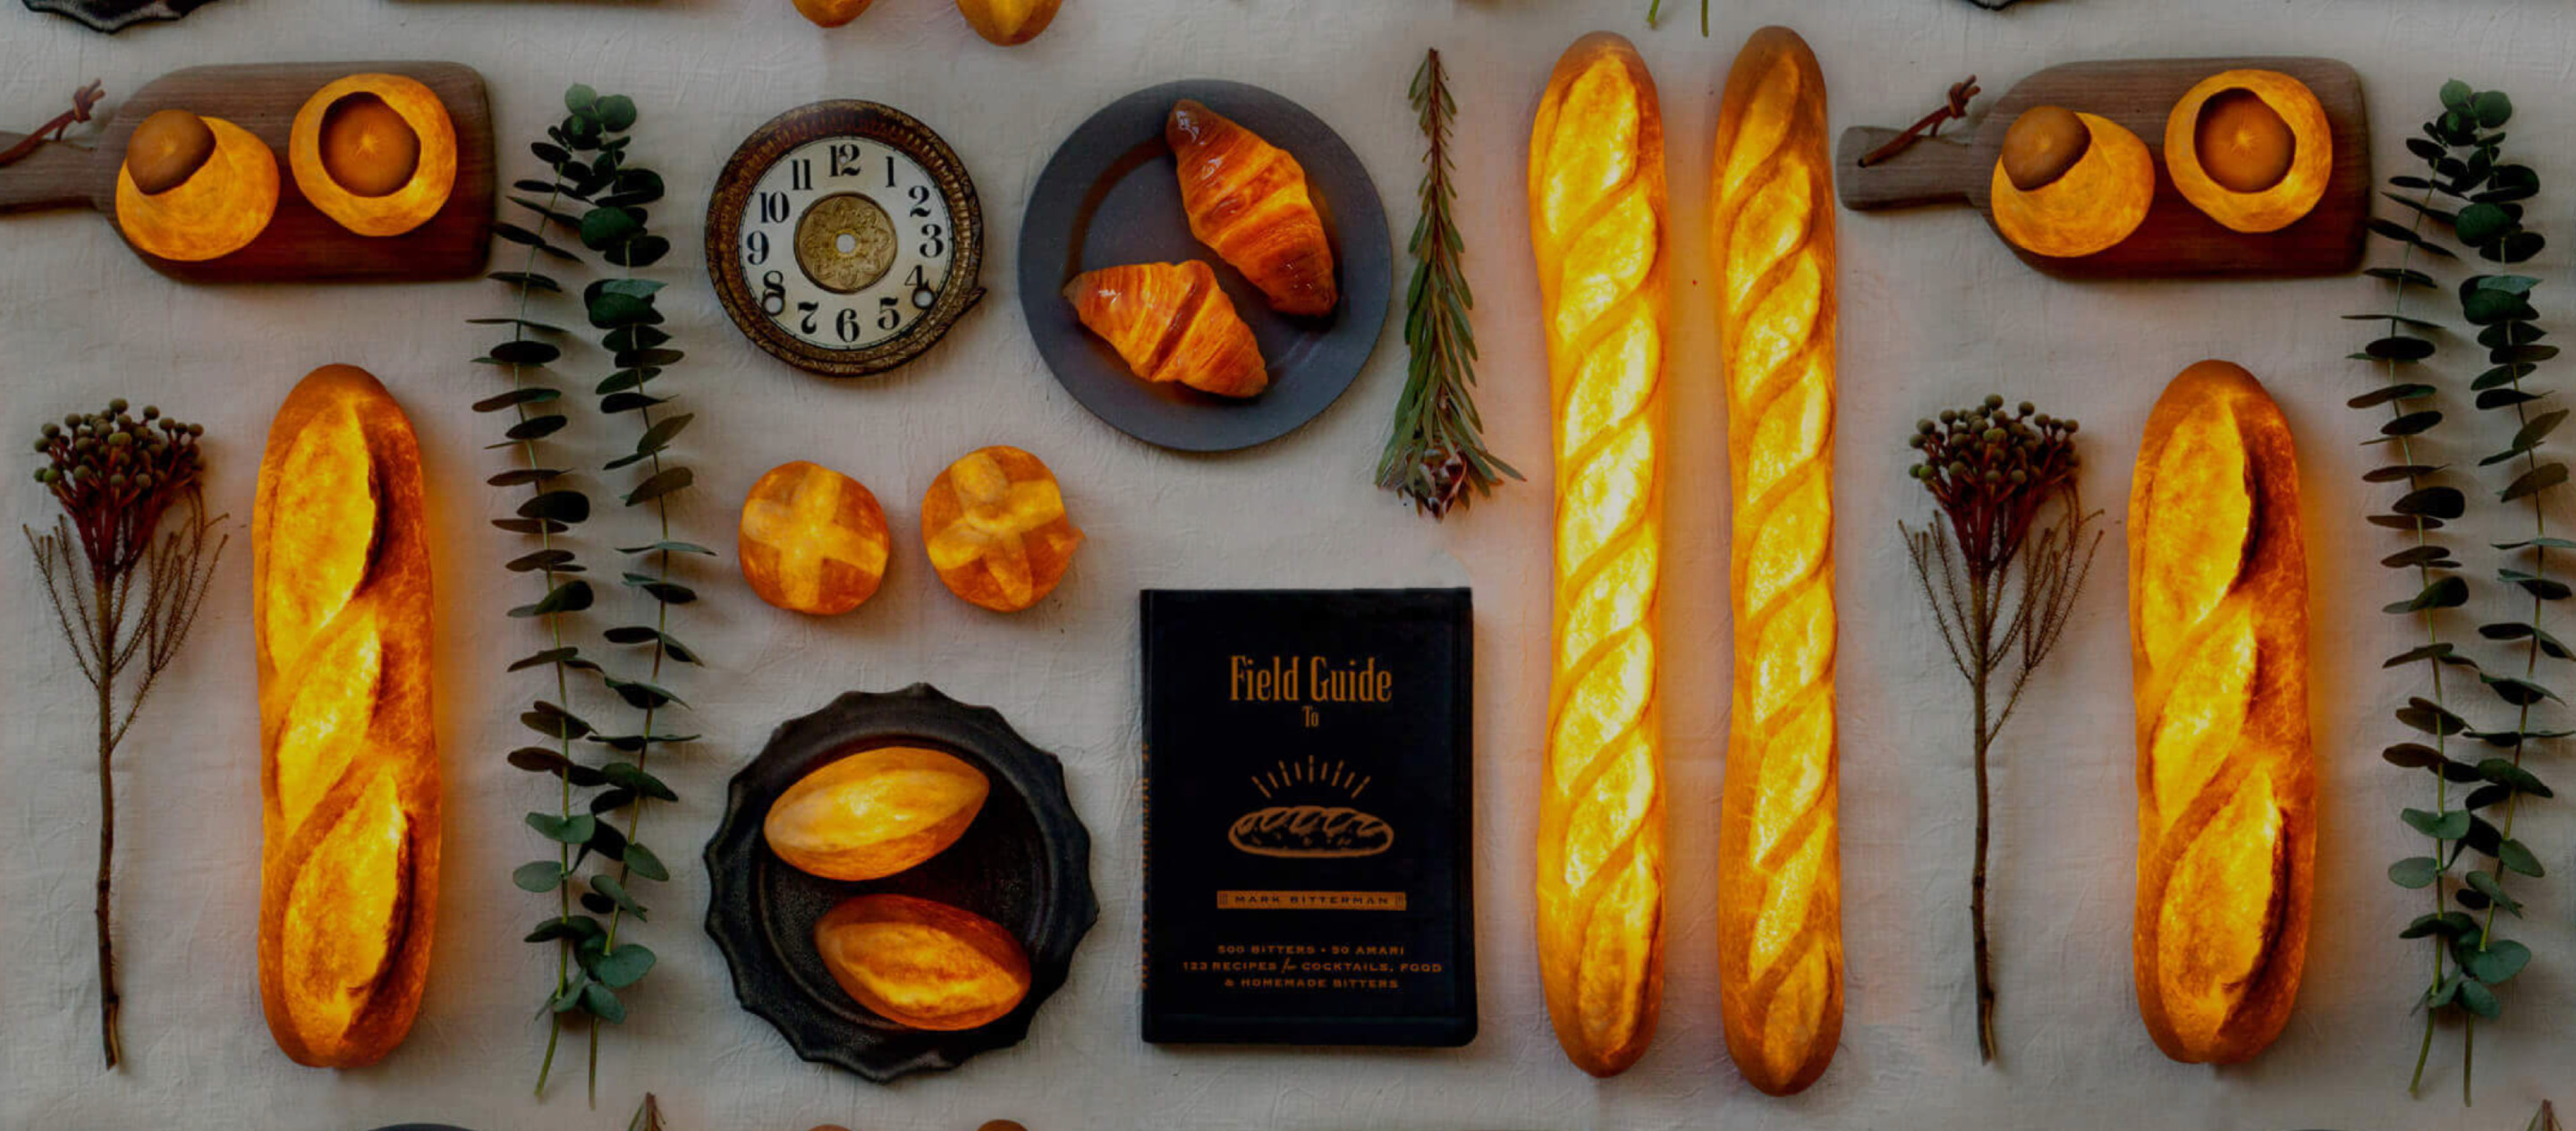 Pampshade แบรนด์ที่เปลี่ยนขนมปังนุ่มๆ เป็นโคมไฟแสงอุ่นละมุนตา